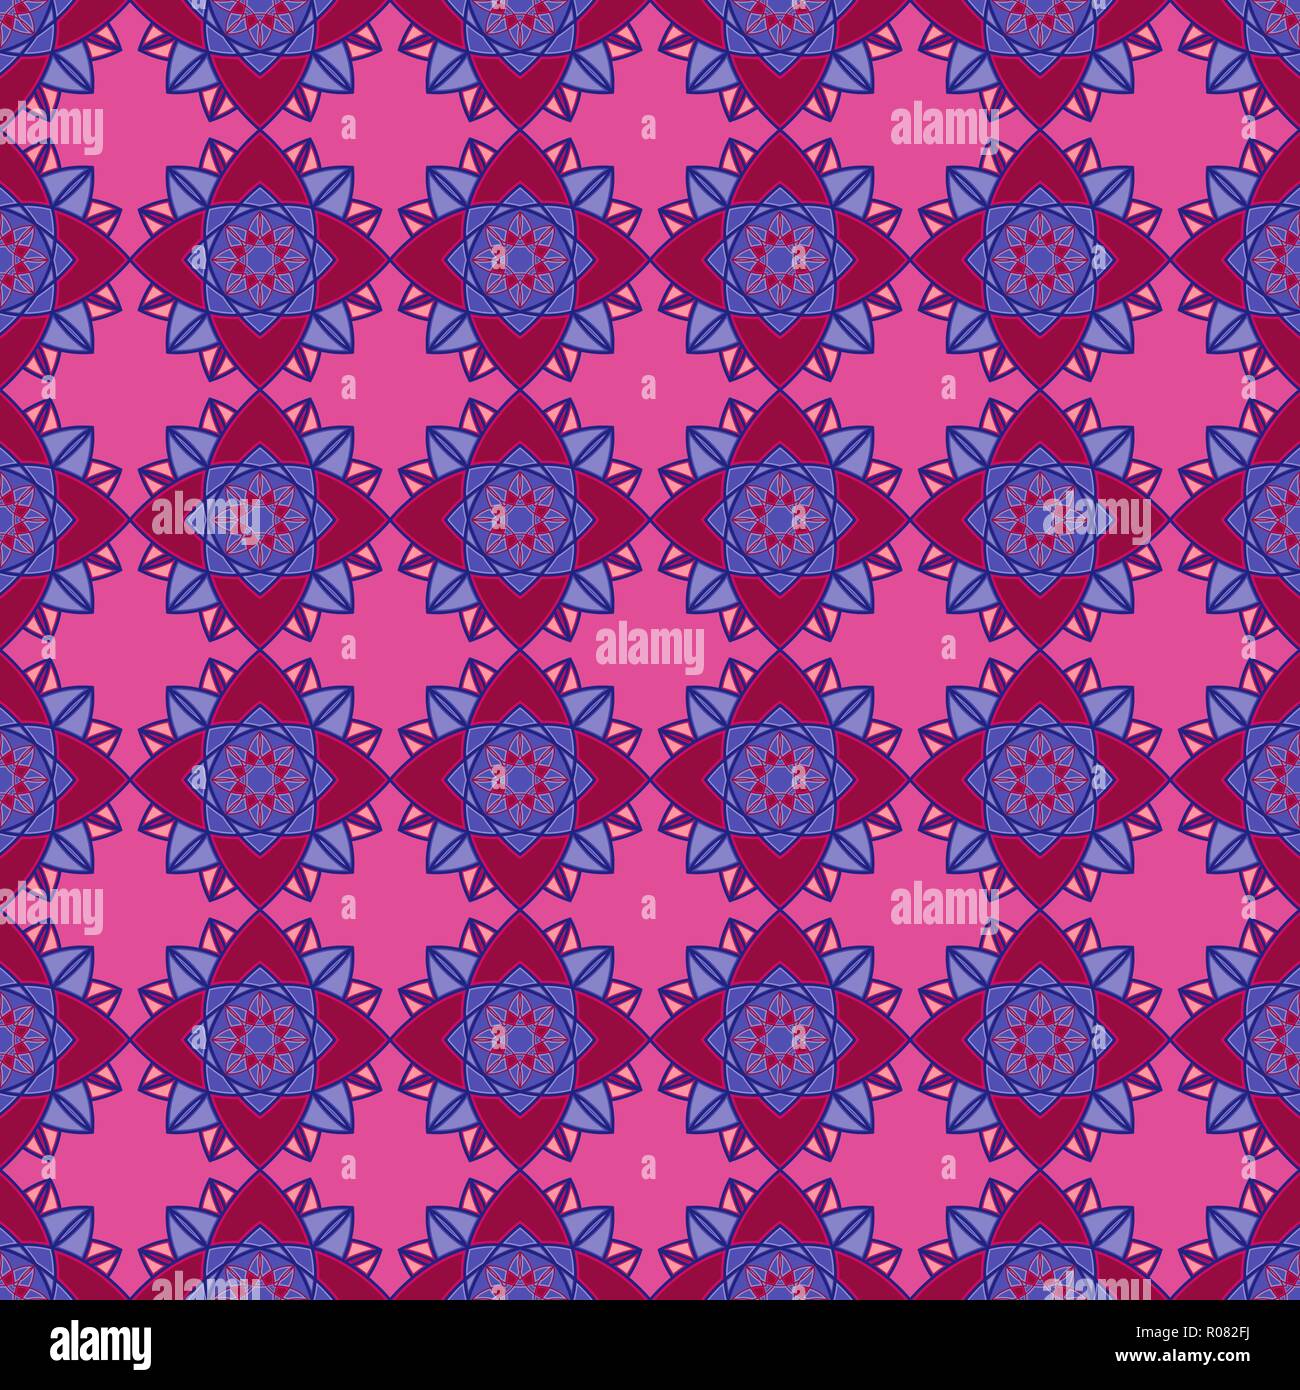 Abstract pattern décoratif se composent de mandala avec les lignes en bleu et d'entrelacs rouges sur le fond rose, muet comme un vecteur sans te tissu Illustration de Vecteur